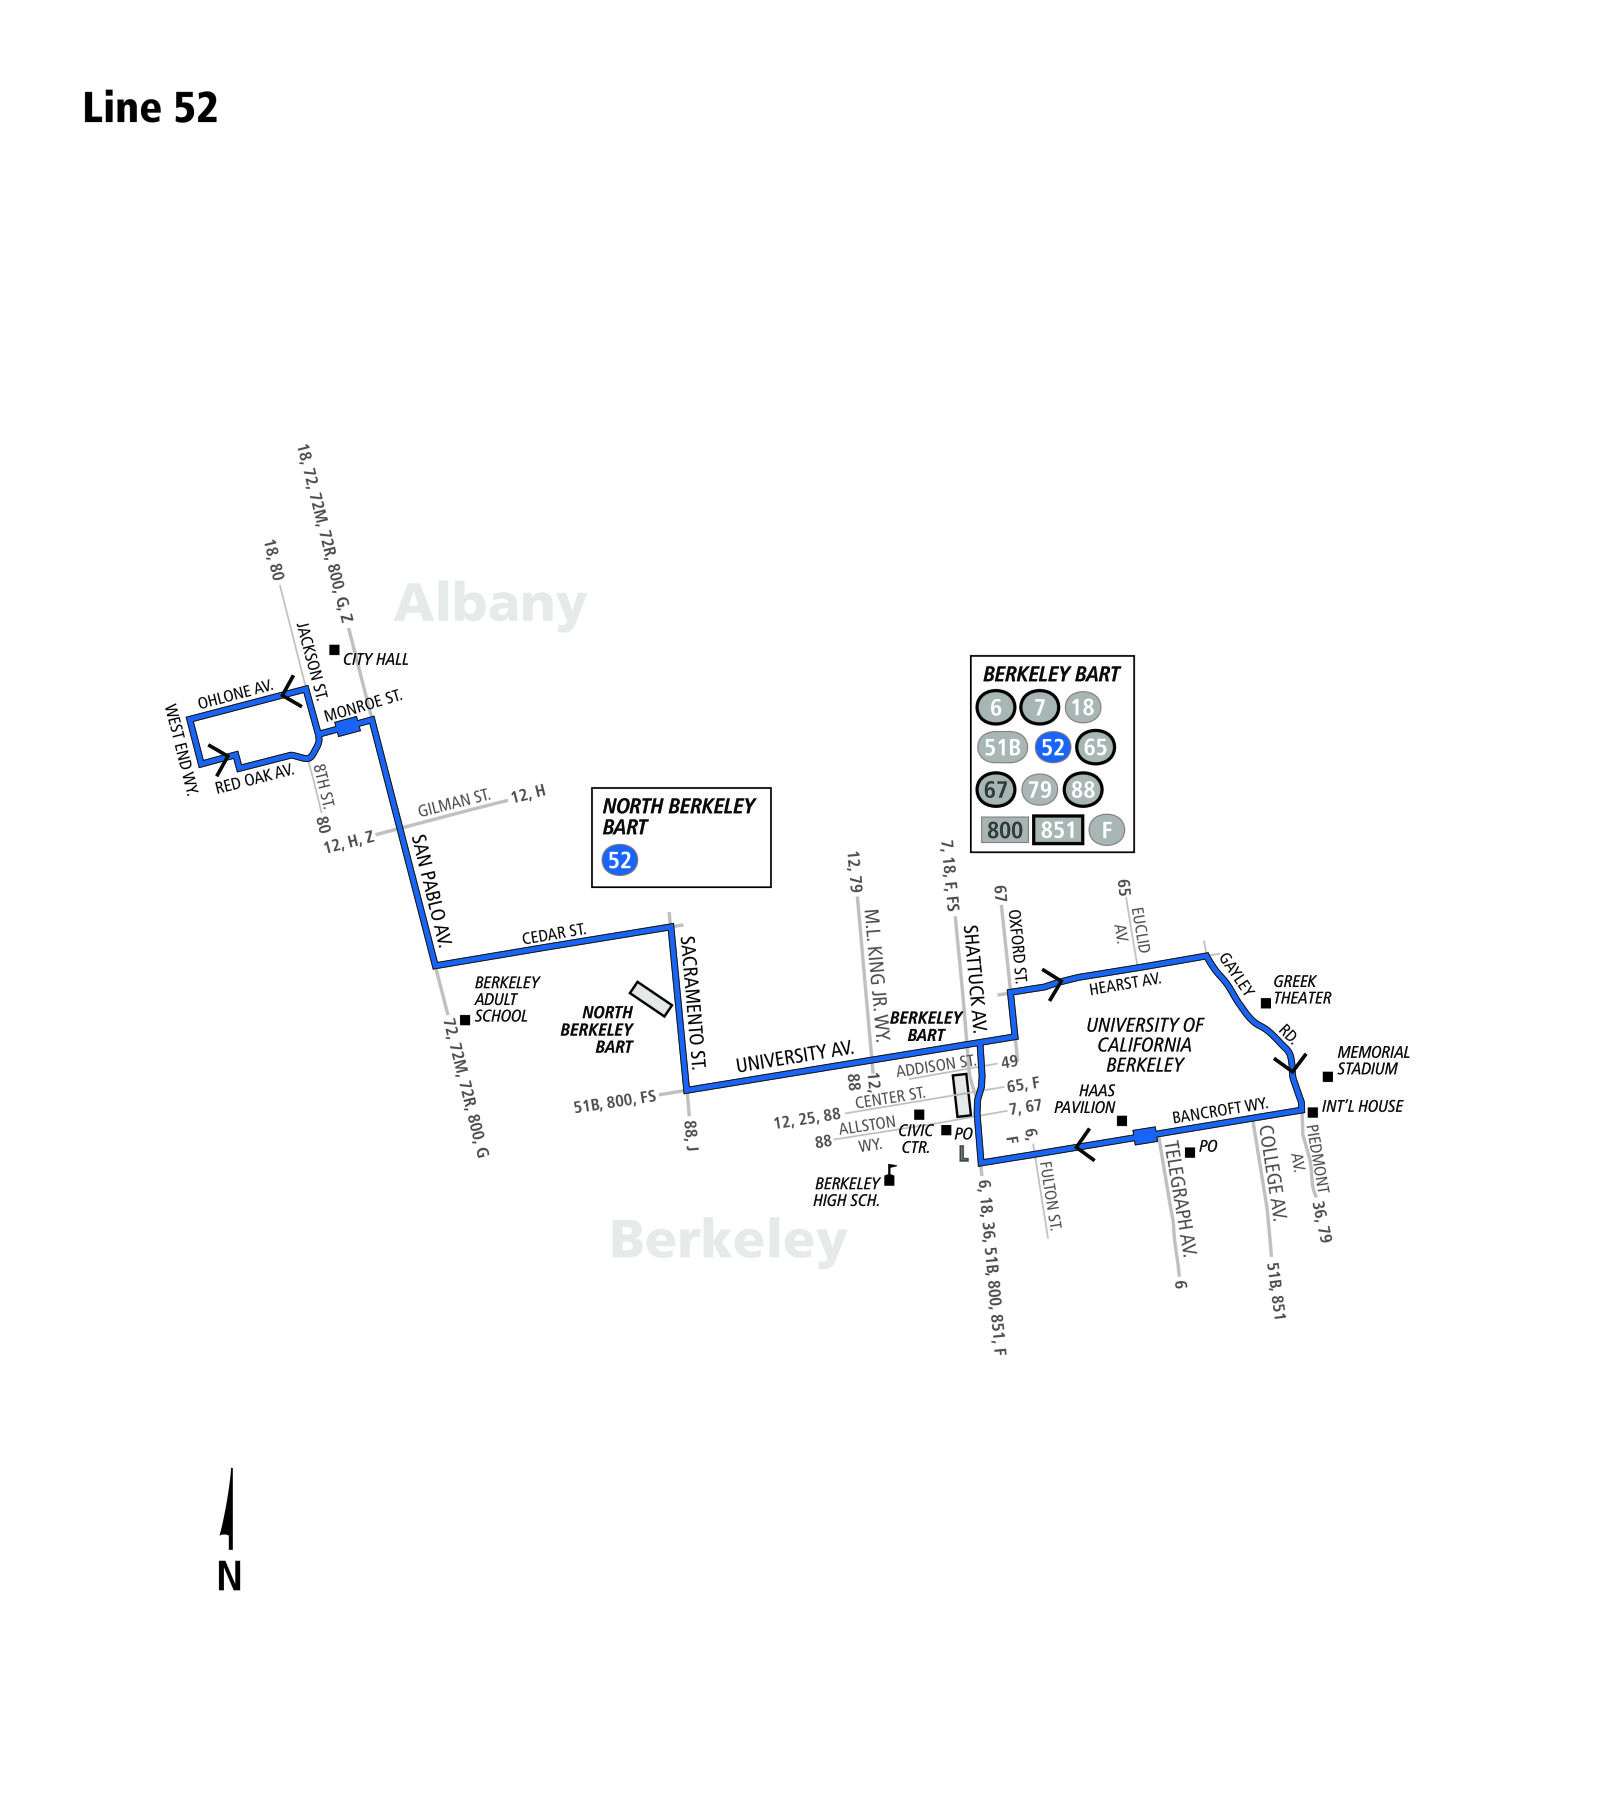 52 bus schedule - ac transit - sf bay transit